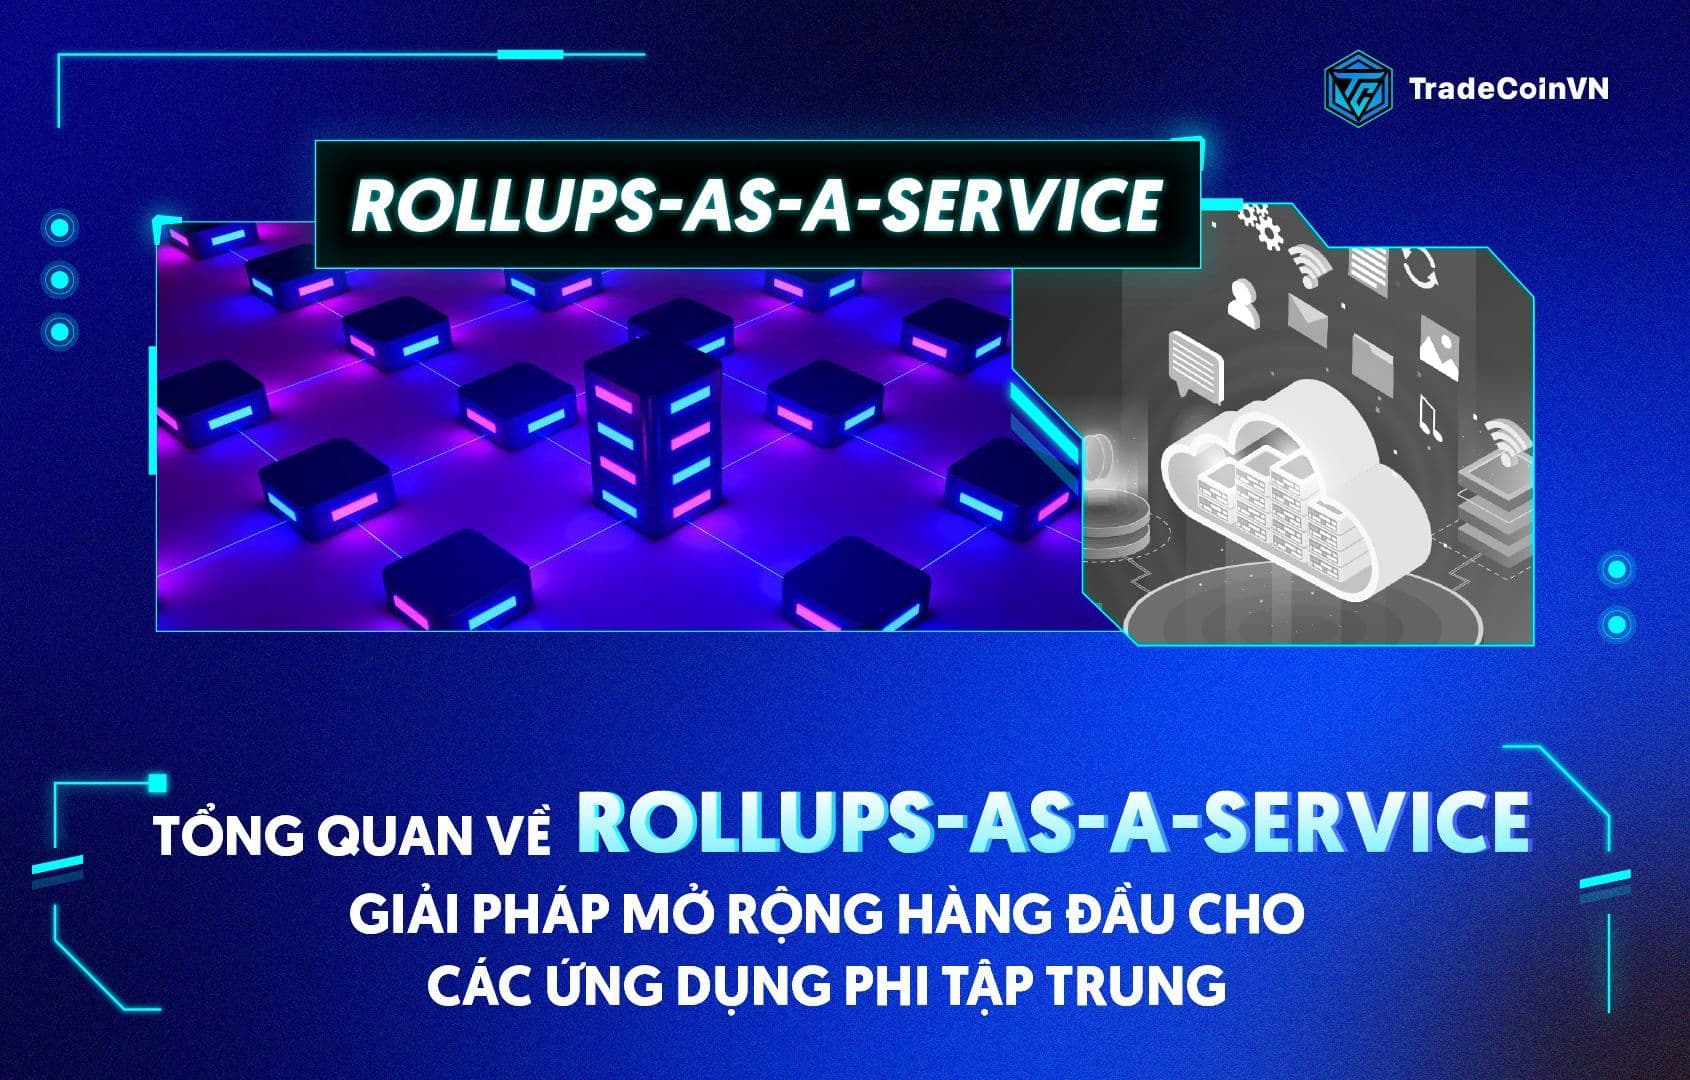 Tổng quan về Rollups-as-a-Service, giải pháp mở rộng hàng đầu cho các ứng dụng phi tập trung